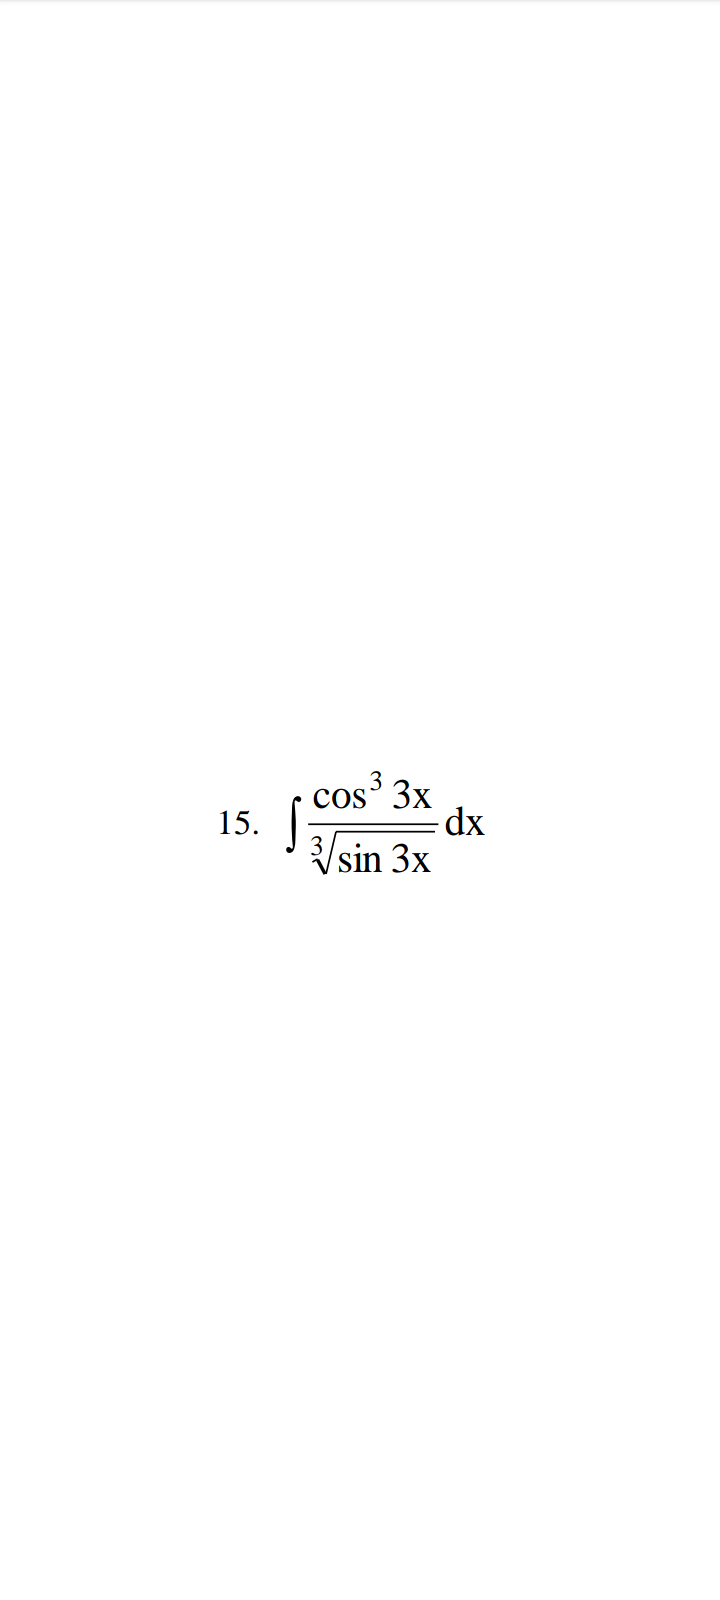 15.
cos³ 3x
dx
√√√sin 3x
S